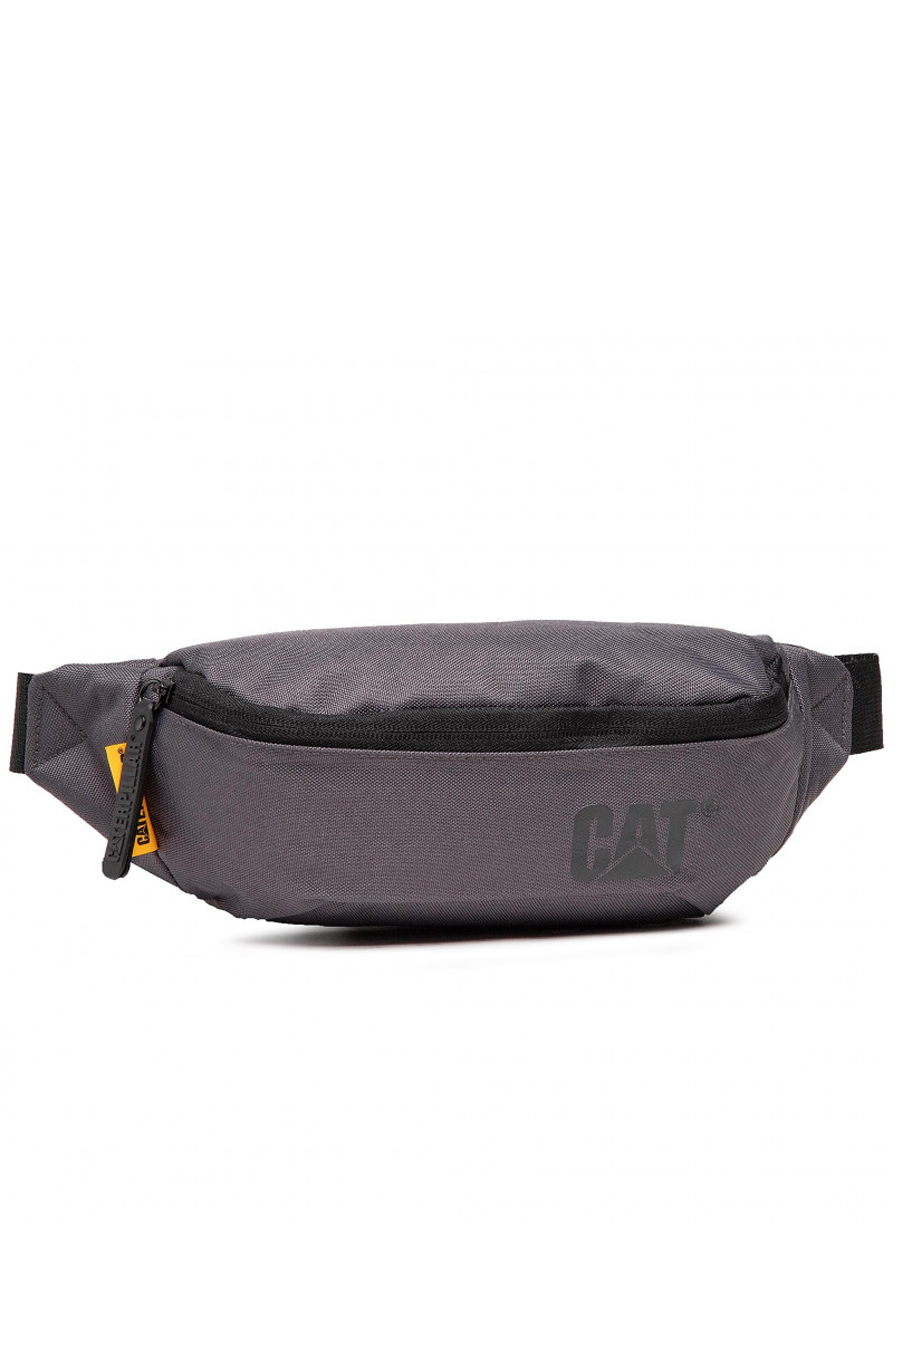 Пояснная сумкa CAT 83615-483